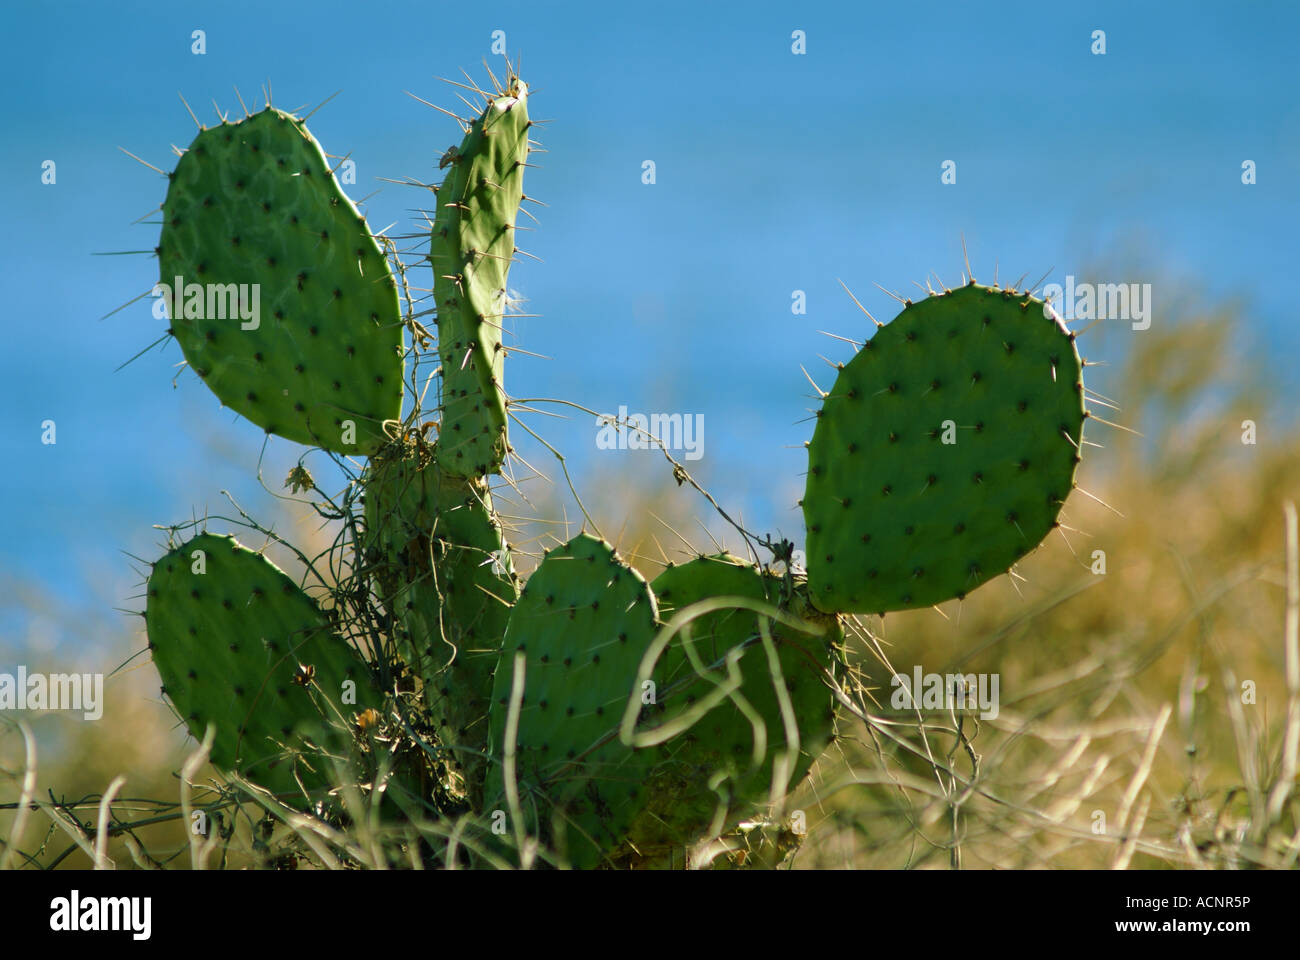 Prickly Pear Cactus near the ocean in Mazatlan Mexico Stock Photo